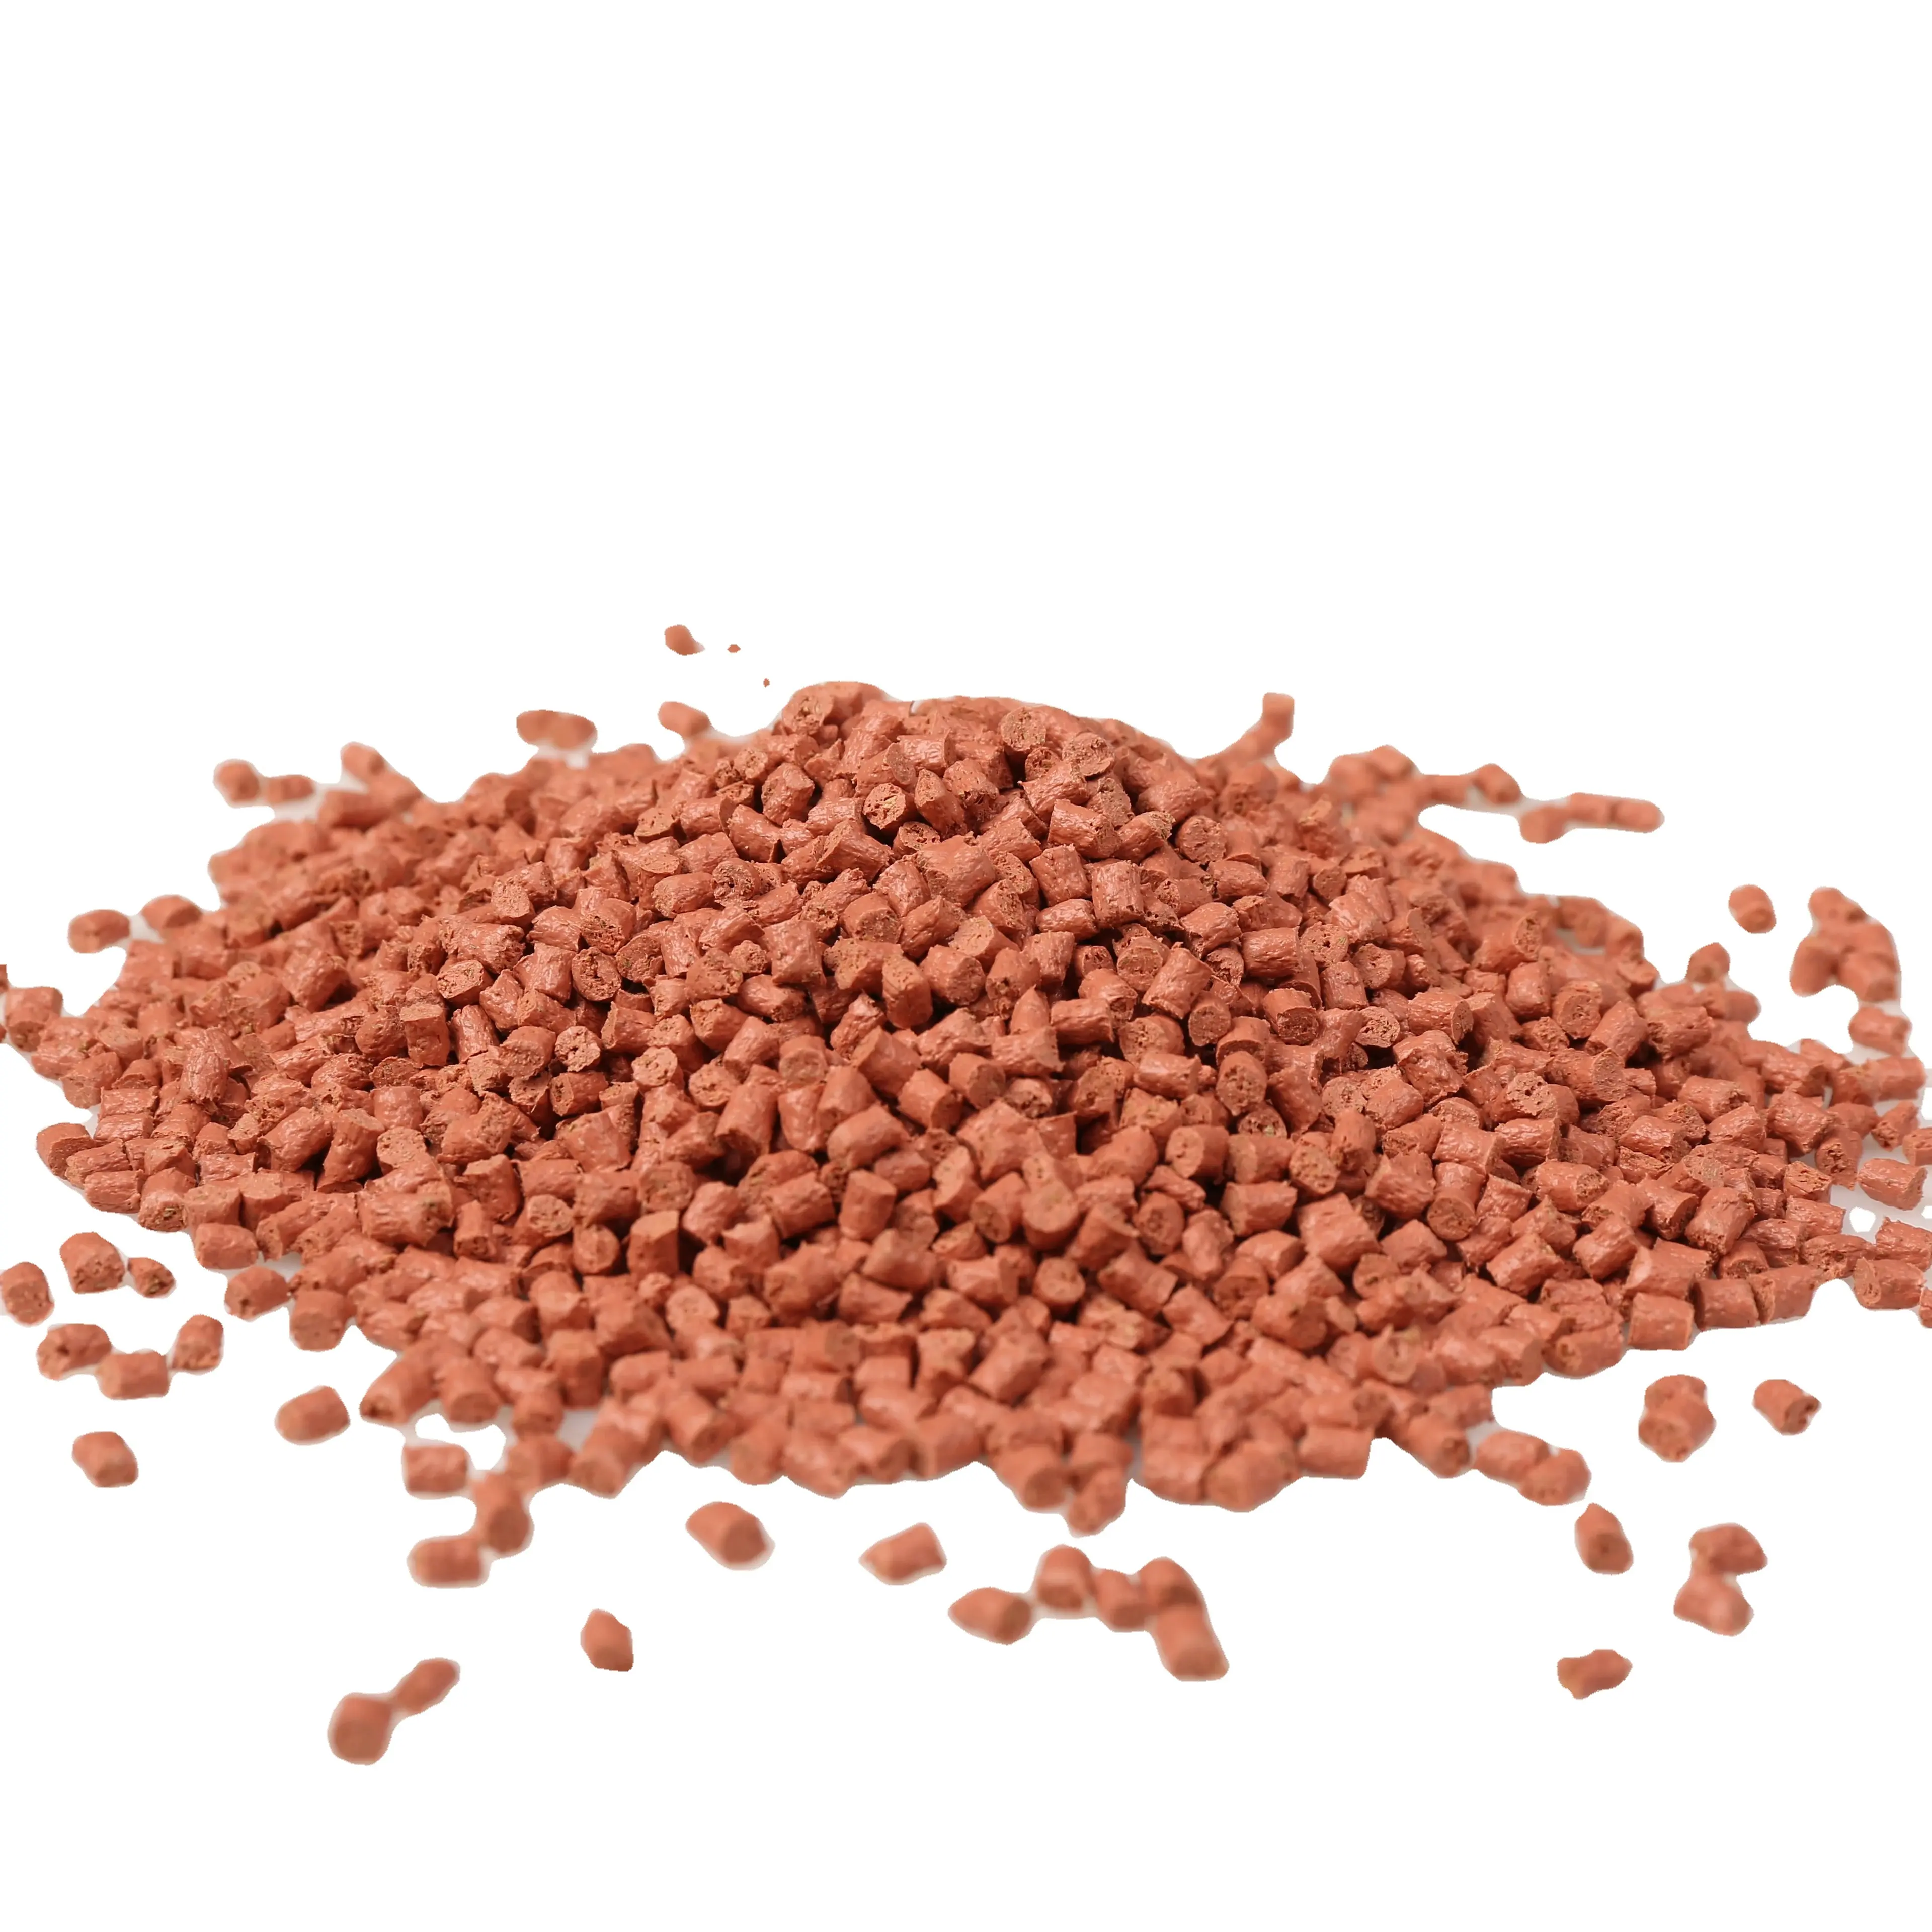 Legno sega polvere ceramica resistente composto pellet contatto cibo robusto odore senza masterbatch plastica pp